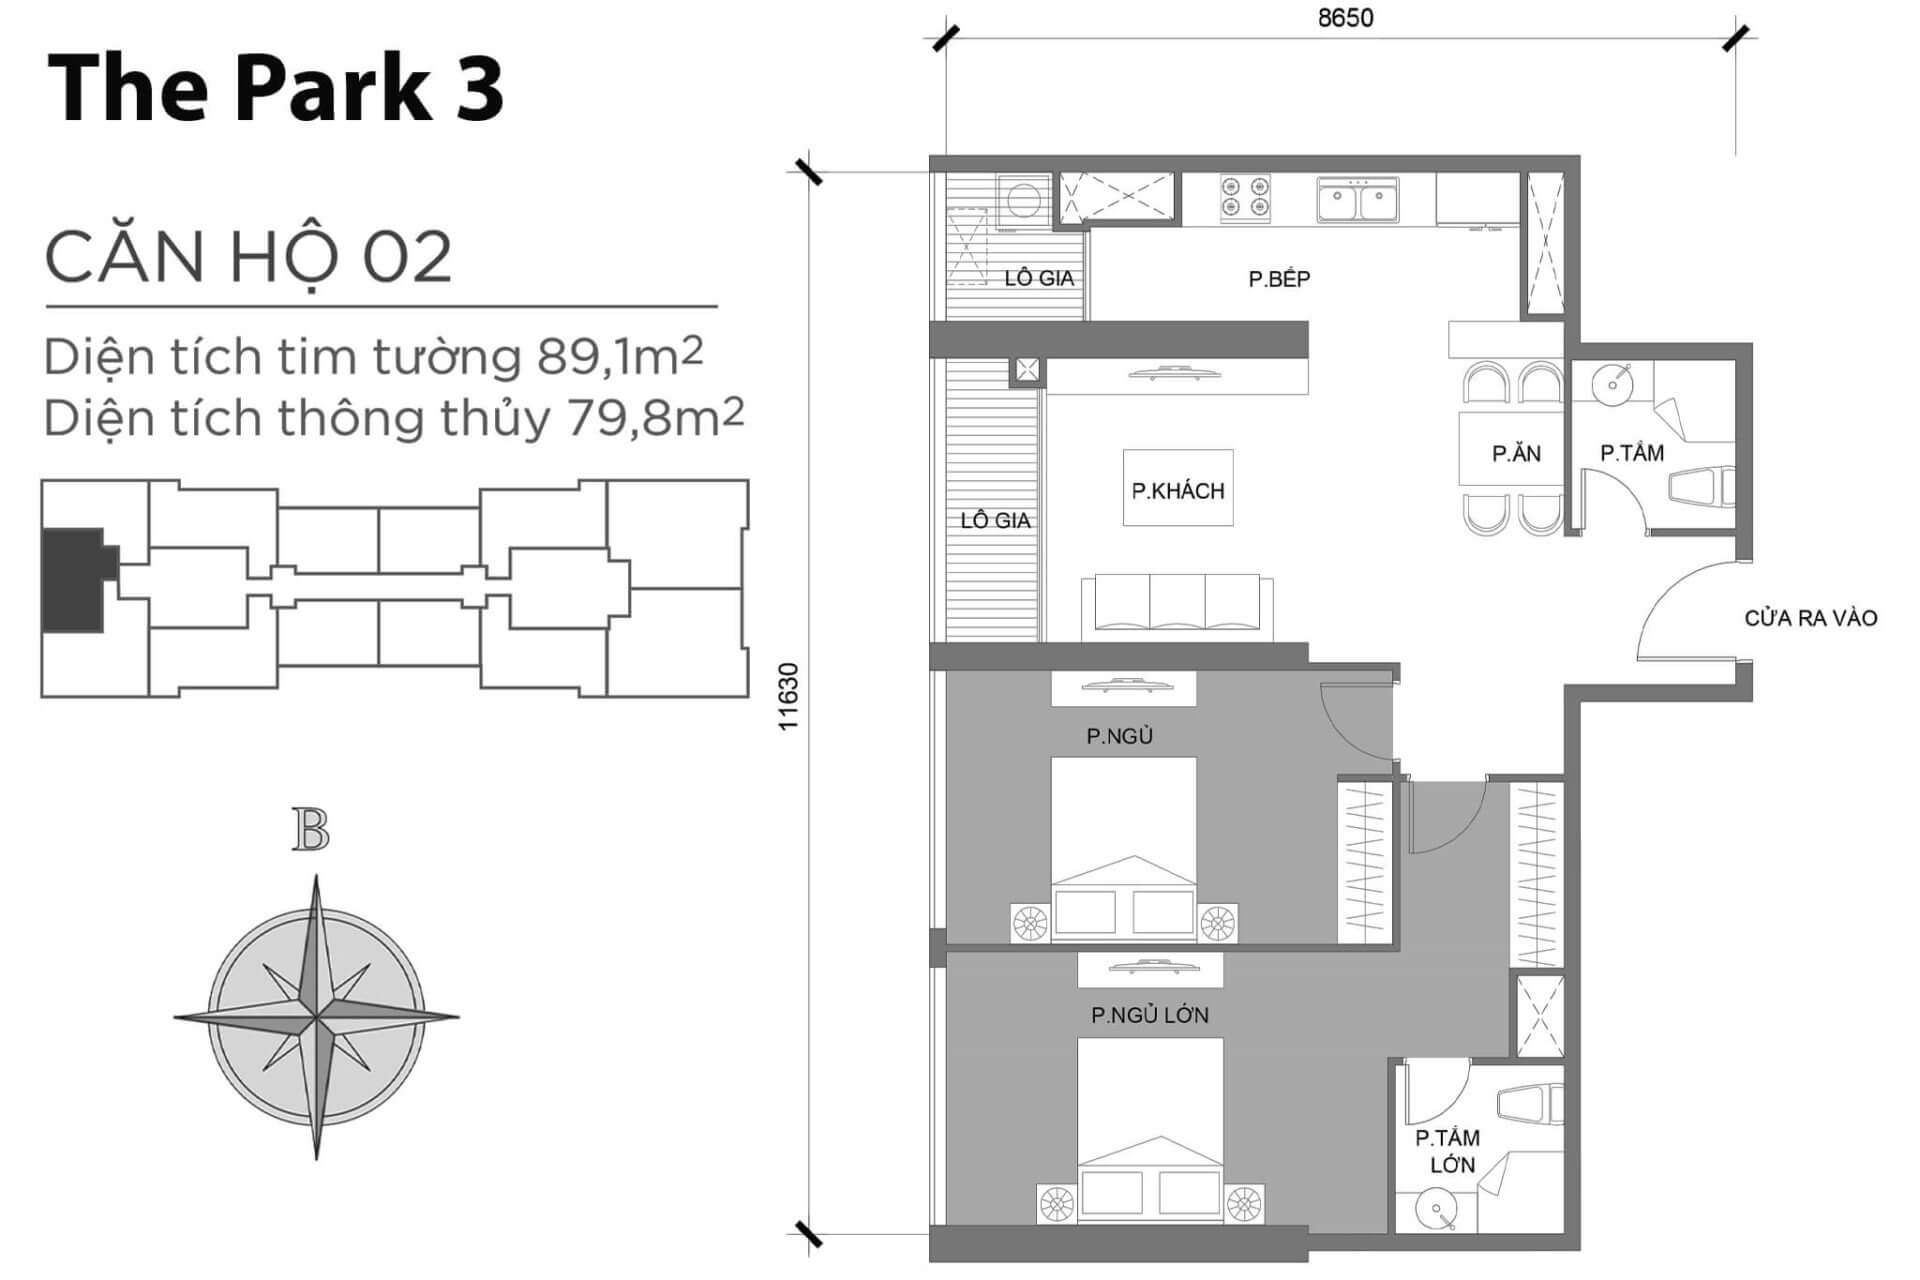 mặt bằng layout căn hộ số 02 Park 3 Vinhomes Central Park